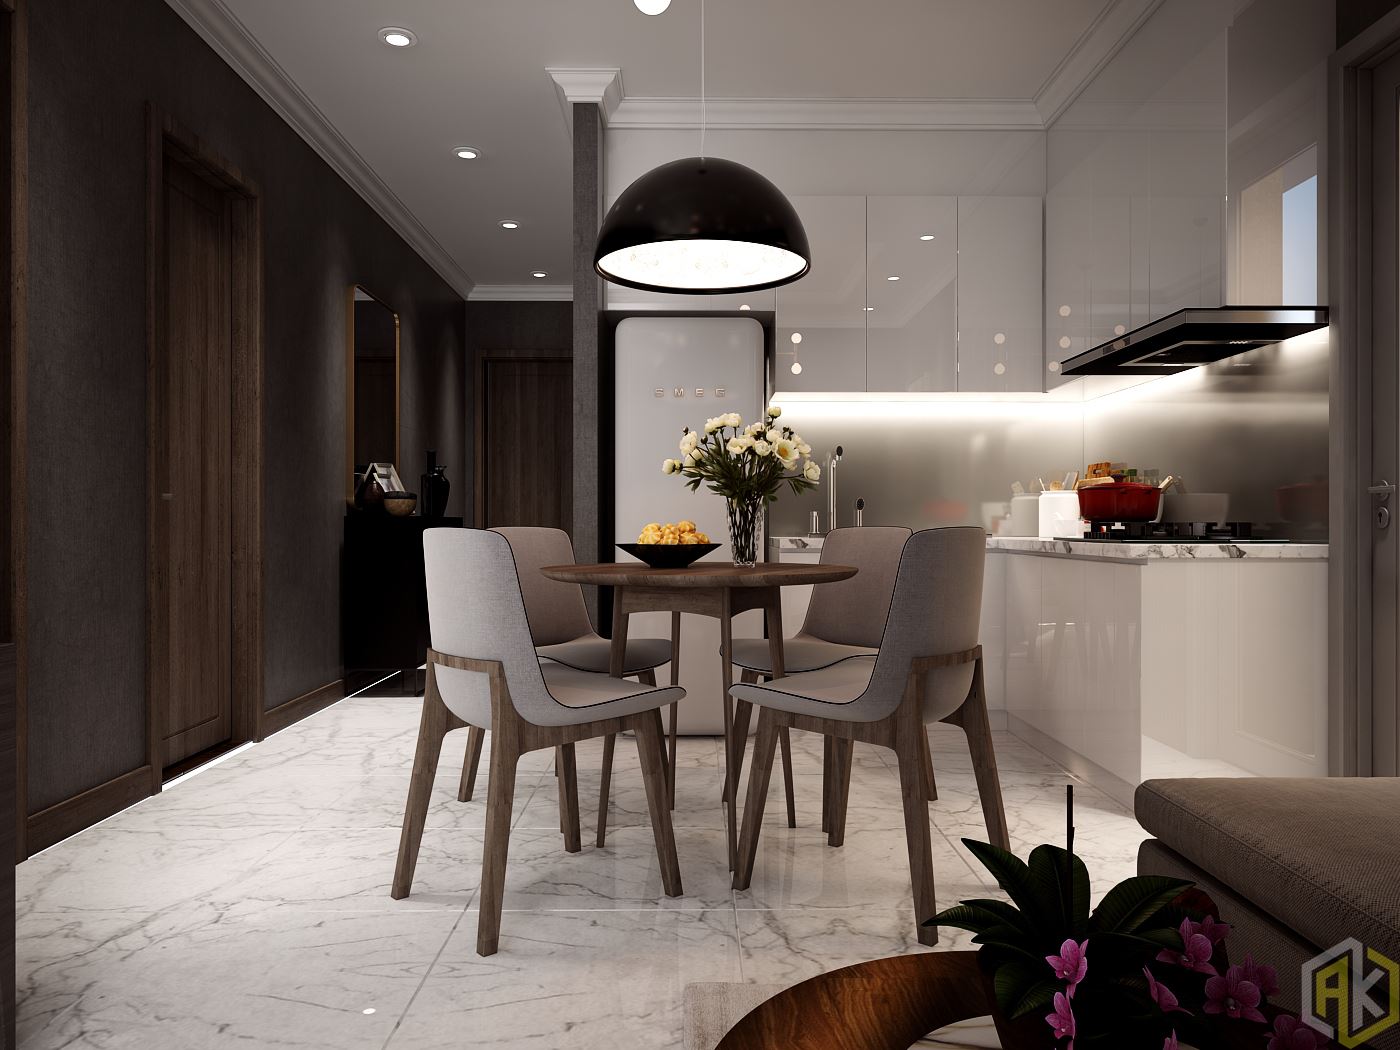 Kinh nghiệm thiết kế nội thất chung cư - bày trí nội thất phòng bếp nên có gam màu chung với tổng thể căn hộ